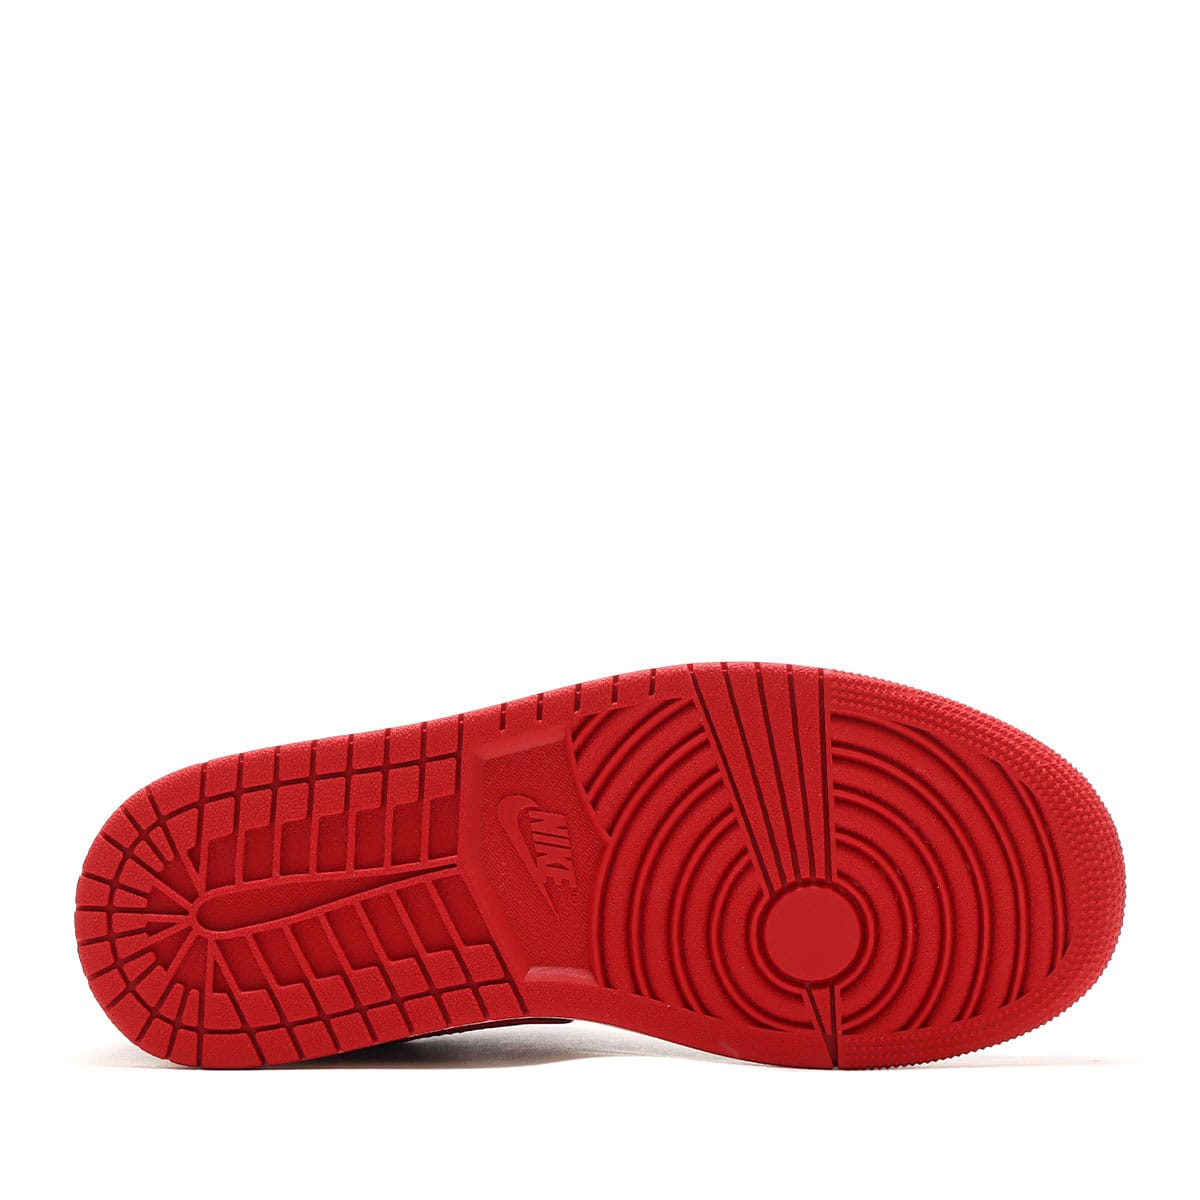 Nike AirJordan 1 Low White/Gym Red/Black - maxicosas.com